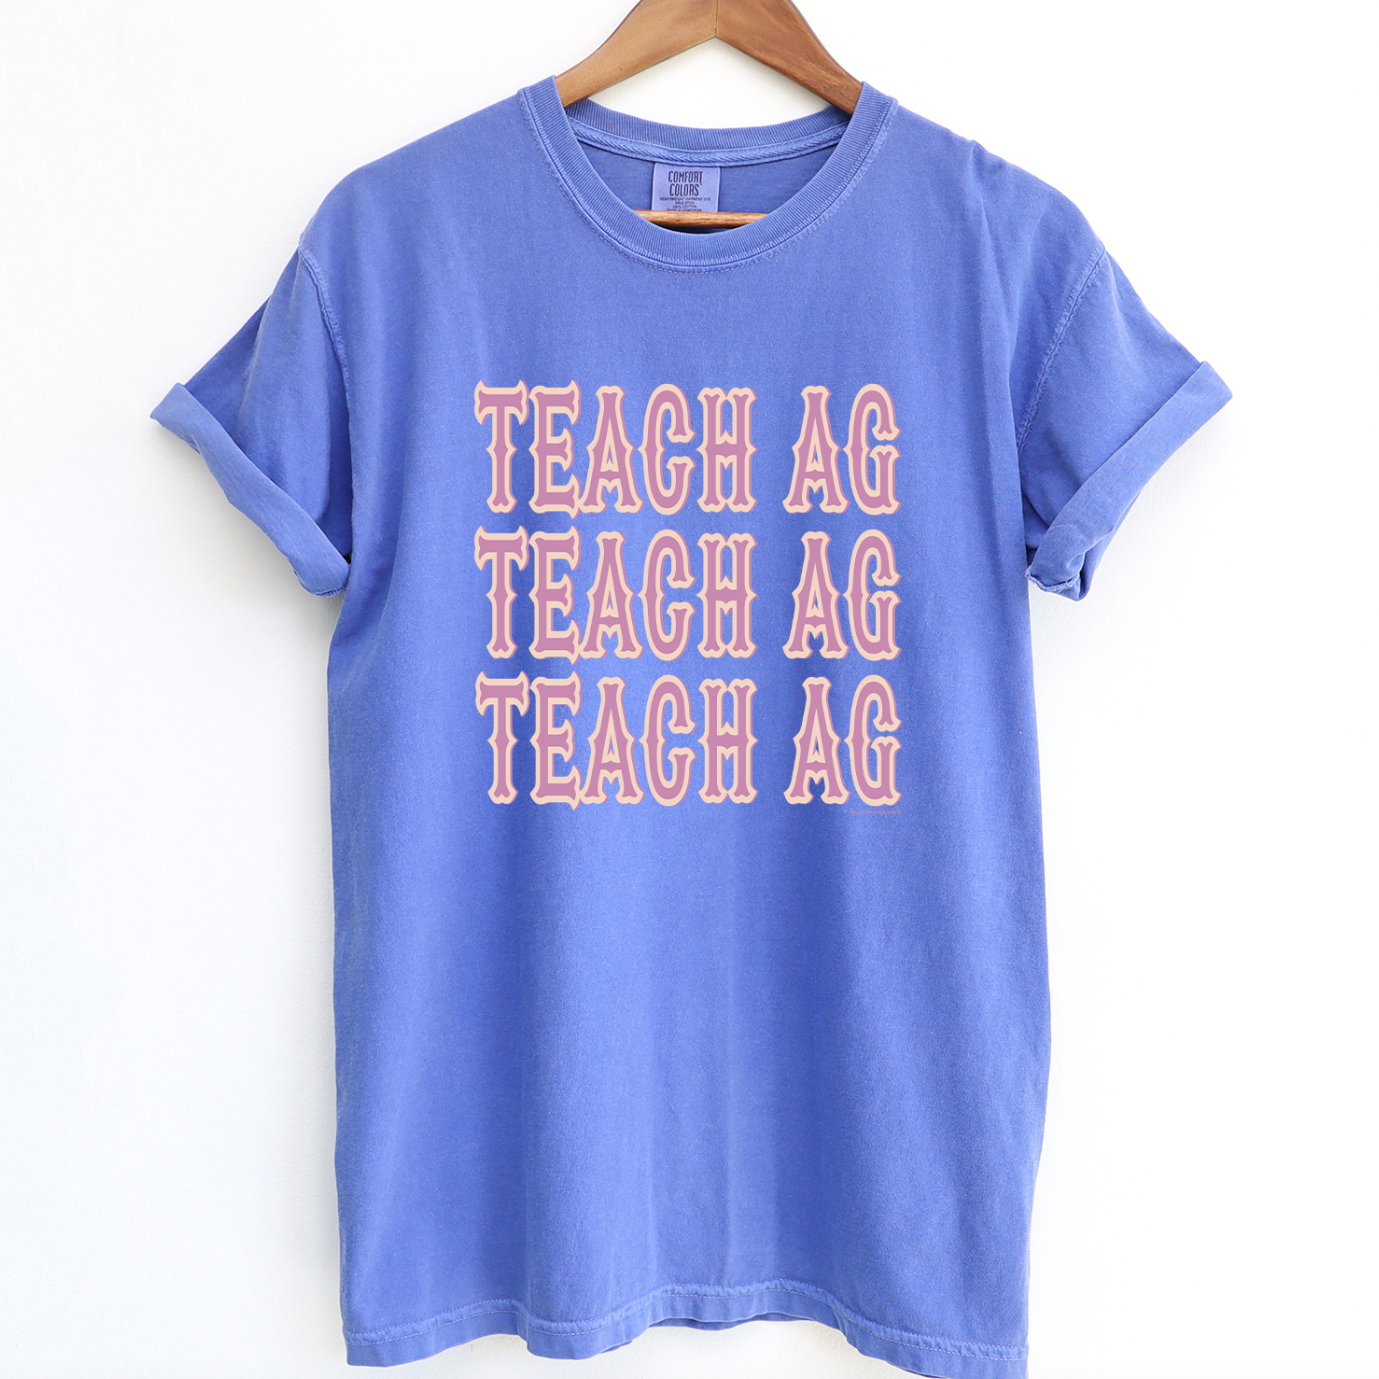 Western Teach Ag ComfortWash/ComfortColor T-Shirt (S-4XL) - Multiple Colors!